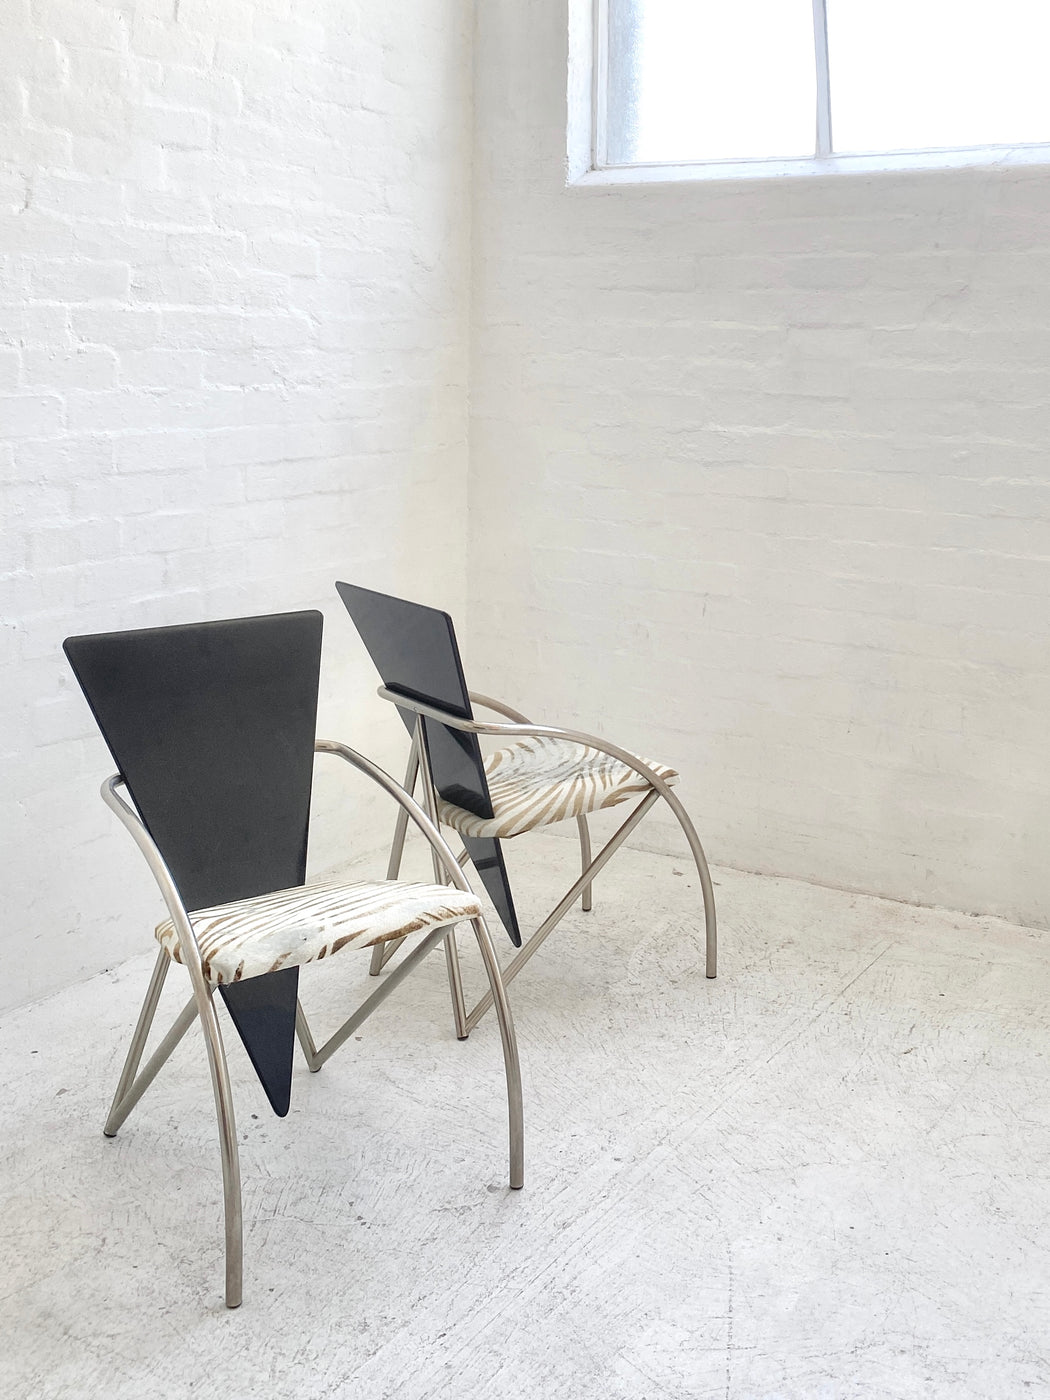 Klaus Wettergren 'Sitting Sculpture' Chair